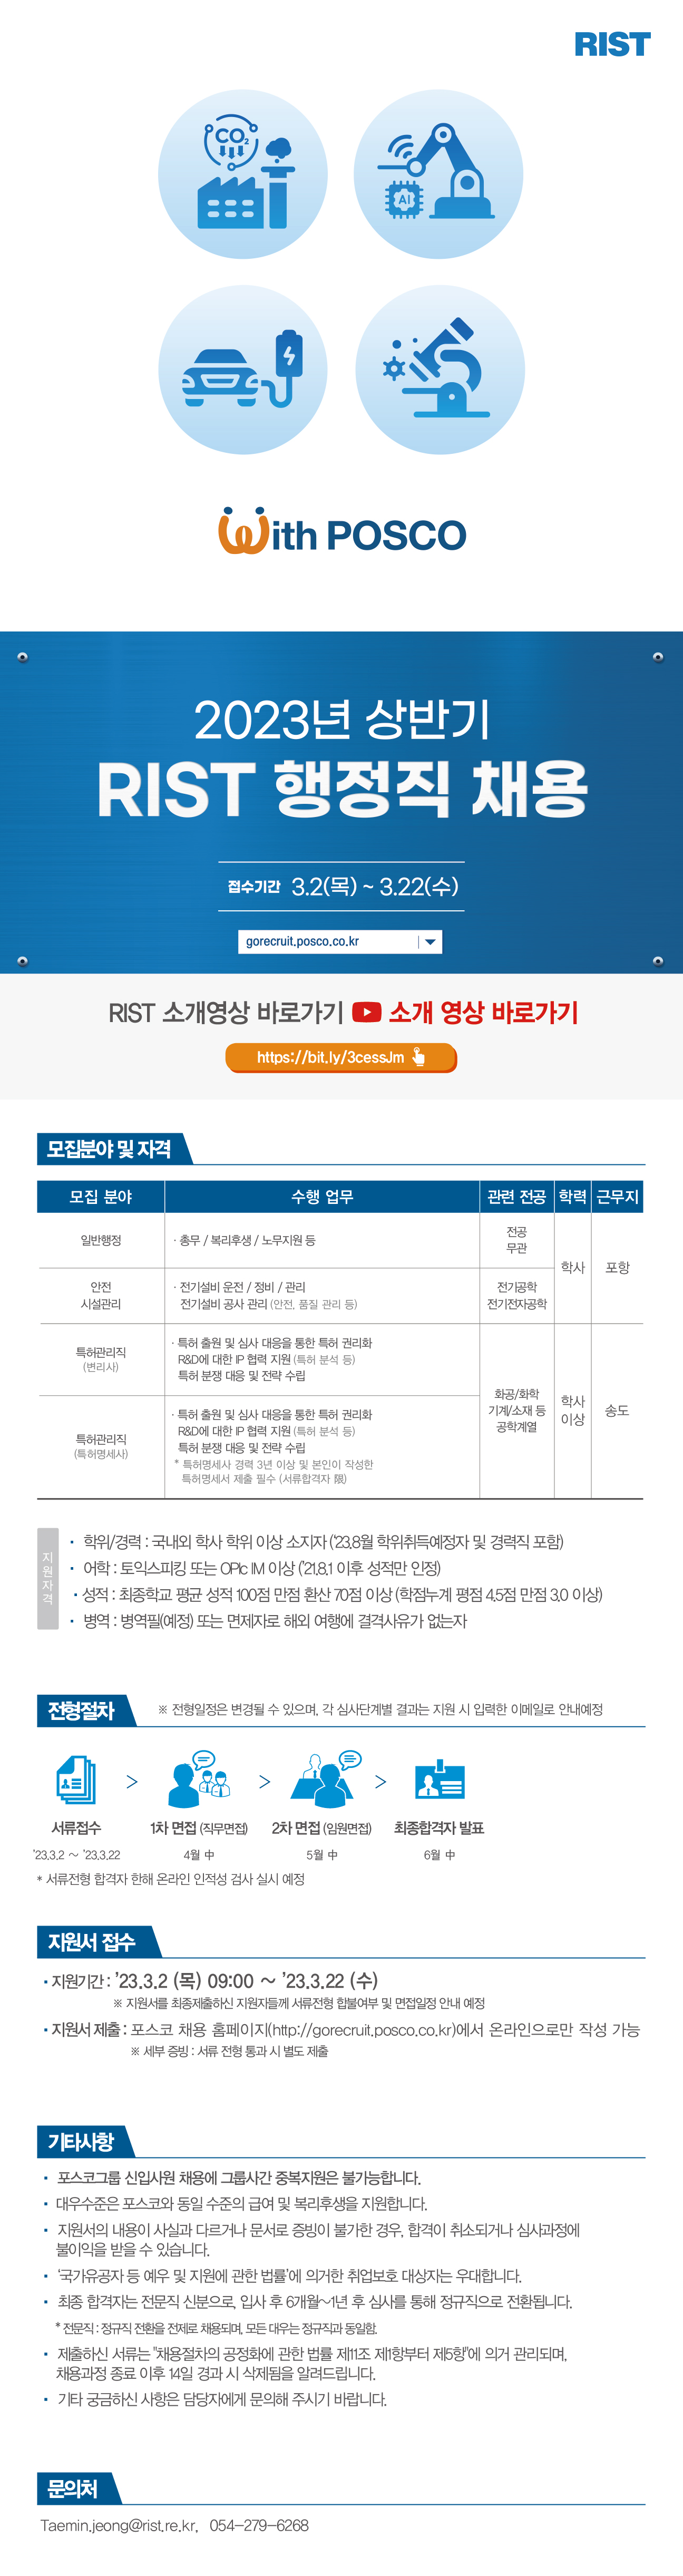 2023 RIST 상반기 공개 채용 웹플라이어_행정직 채용.jpg